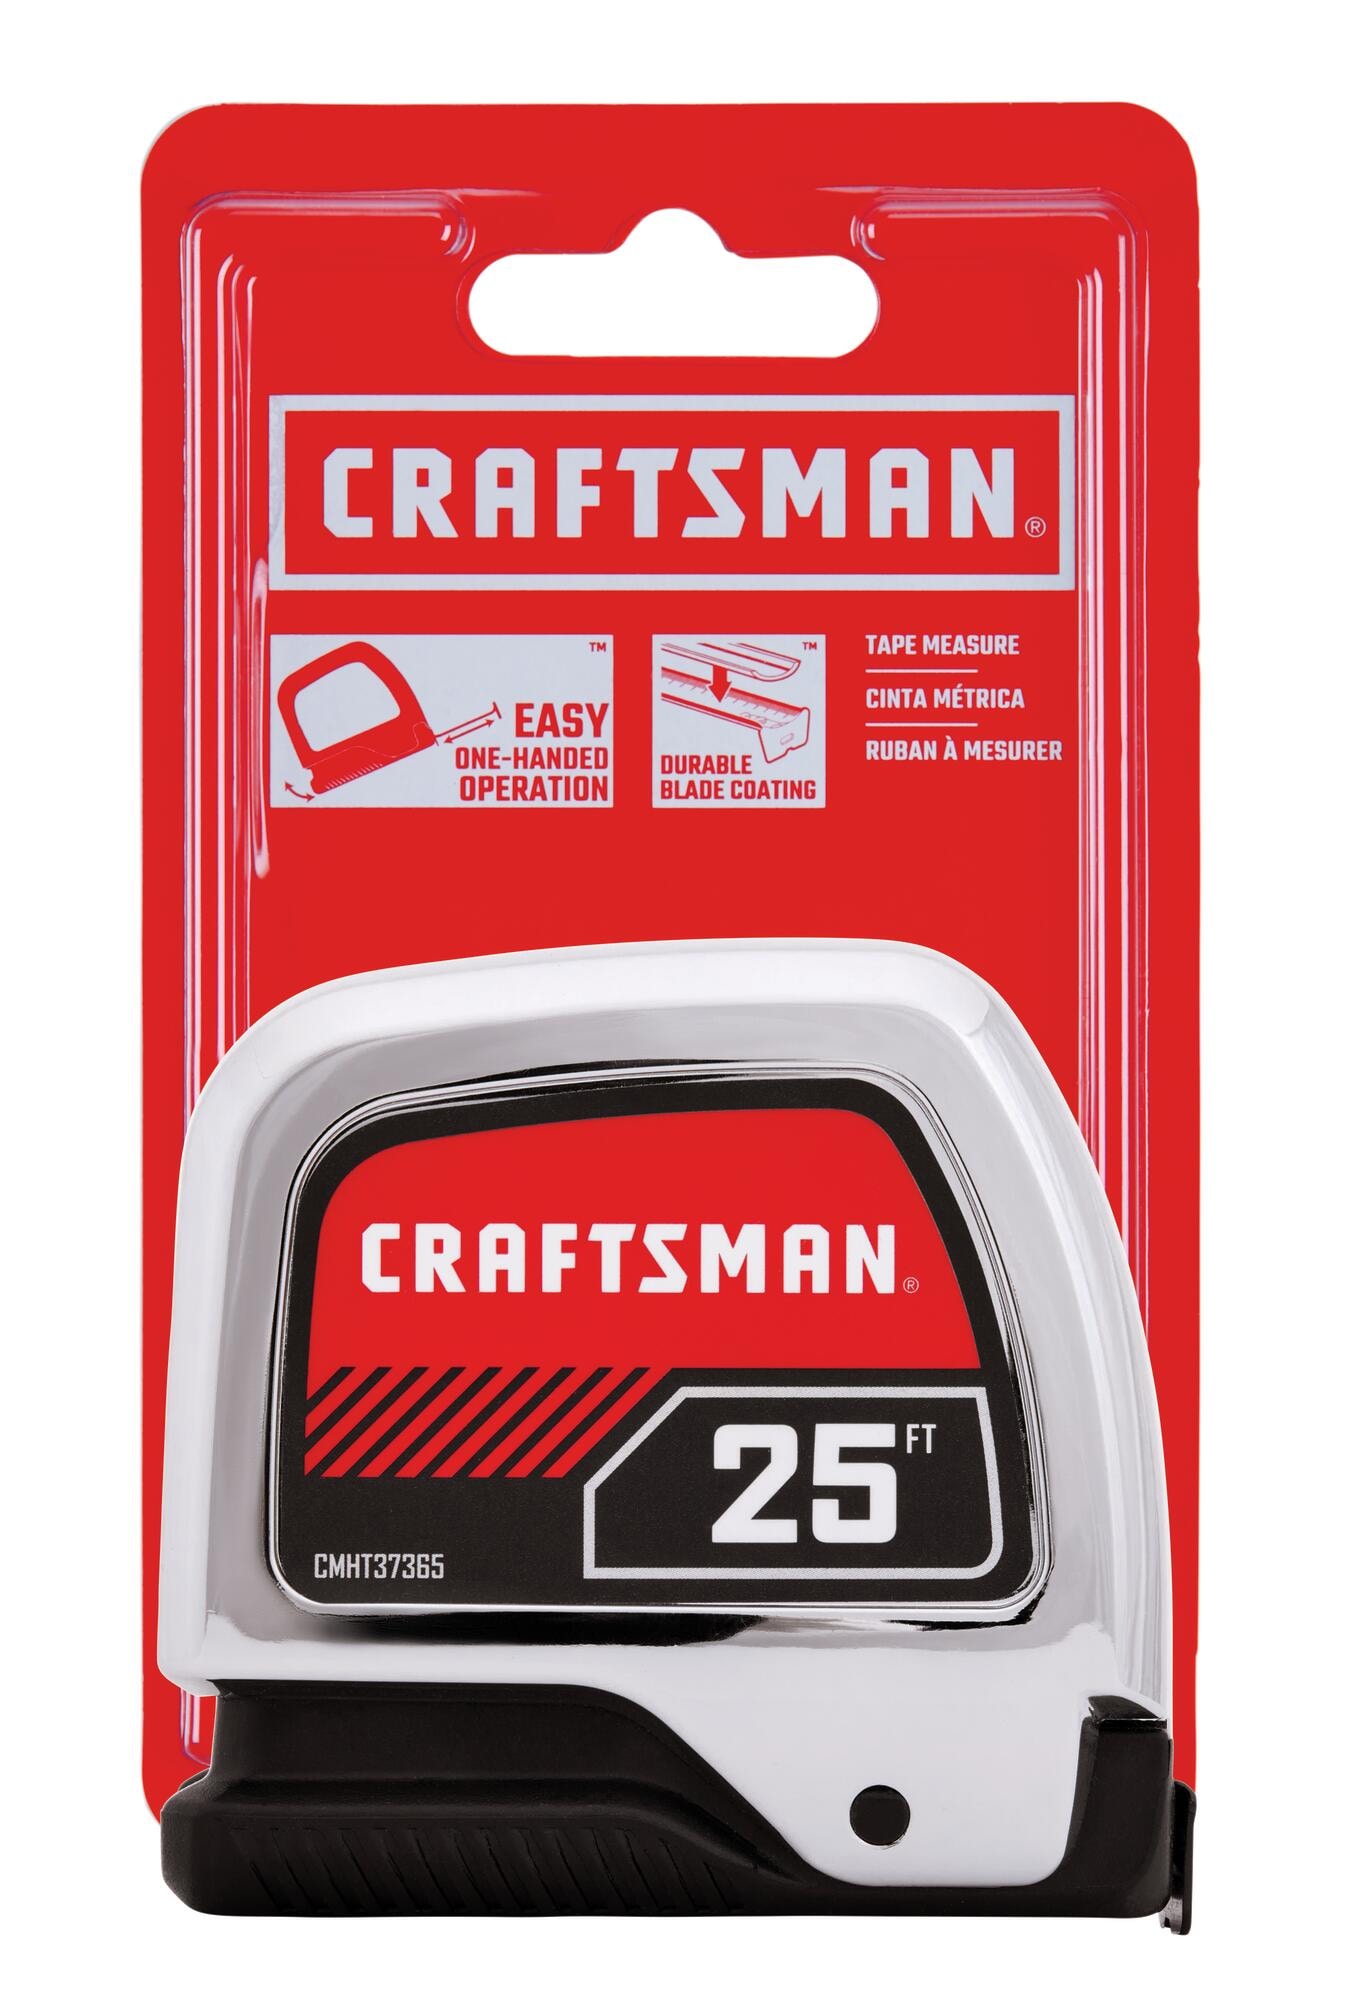 Craftsman Measuring Tool 16-Foot Sidewinder Tape Measure Layout CTM1016 